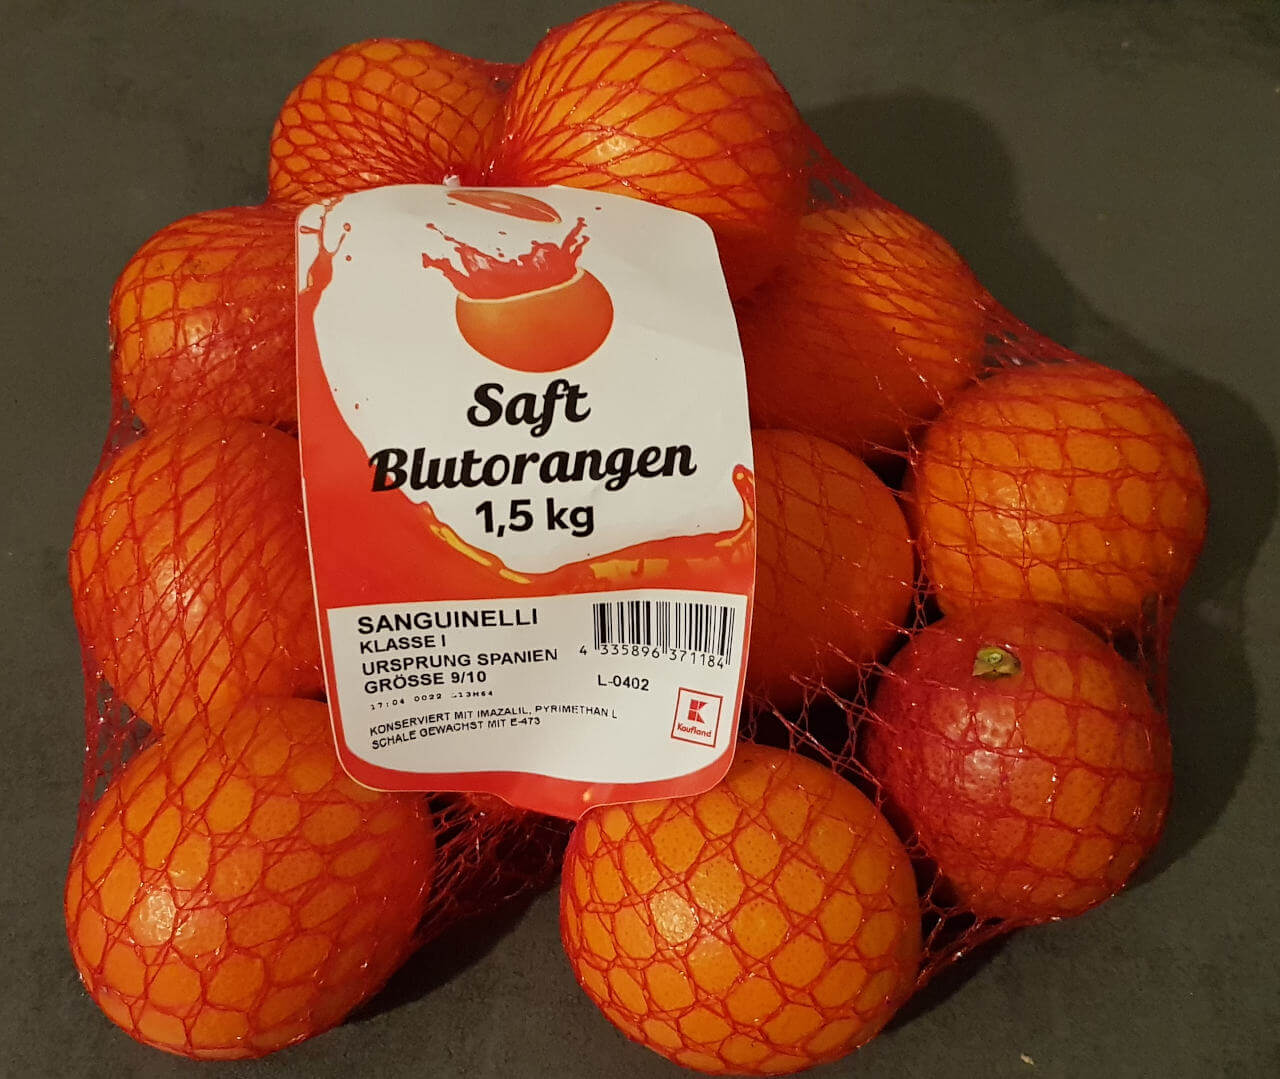 Sanguinelli Blutorangen aus dem Supermarkt mit Herkunft Spanien